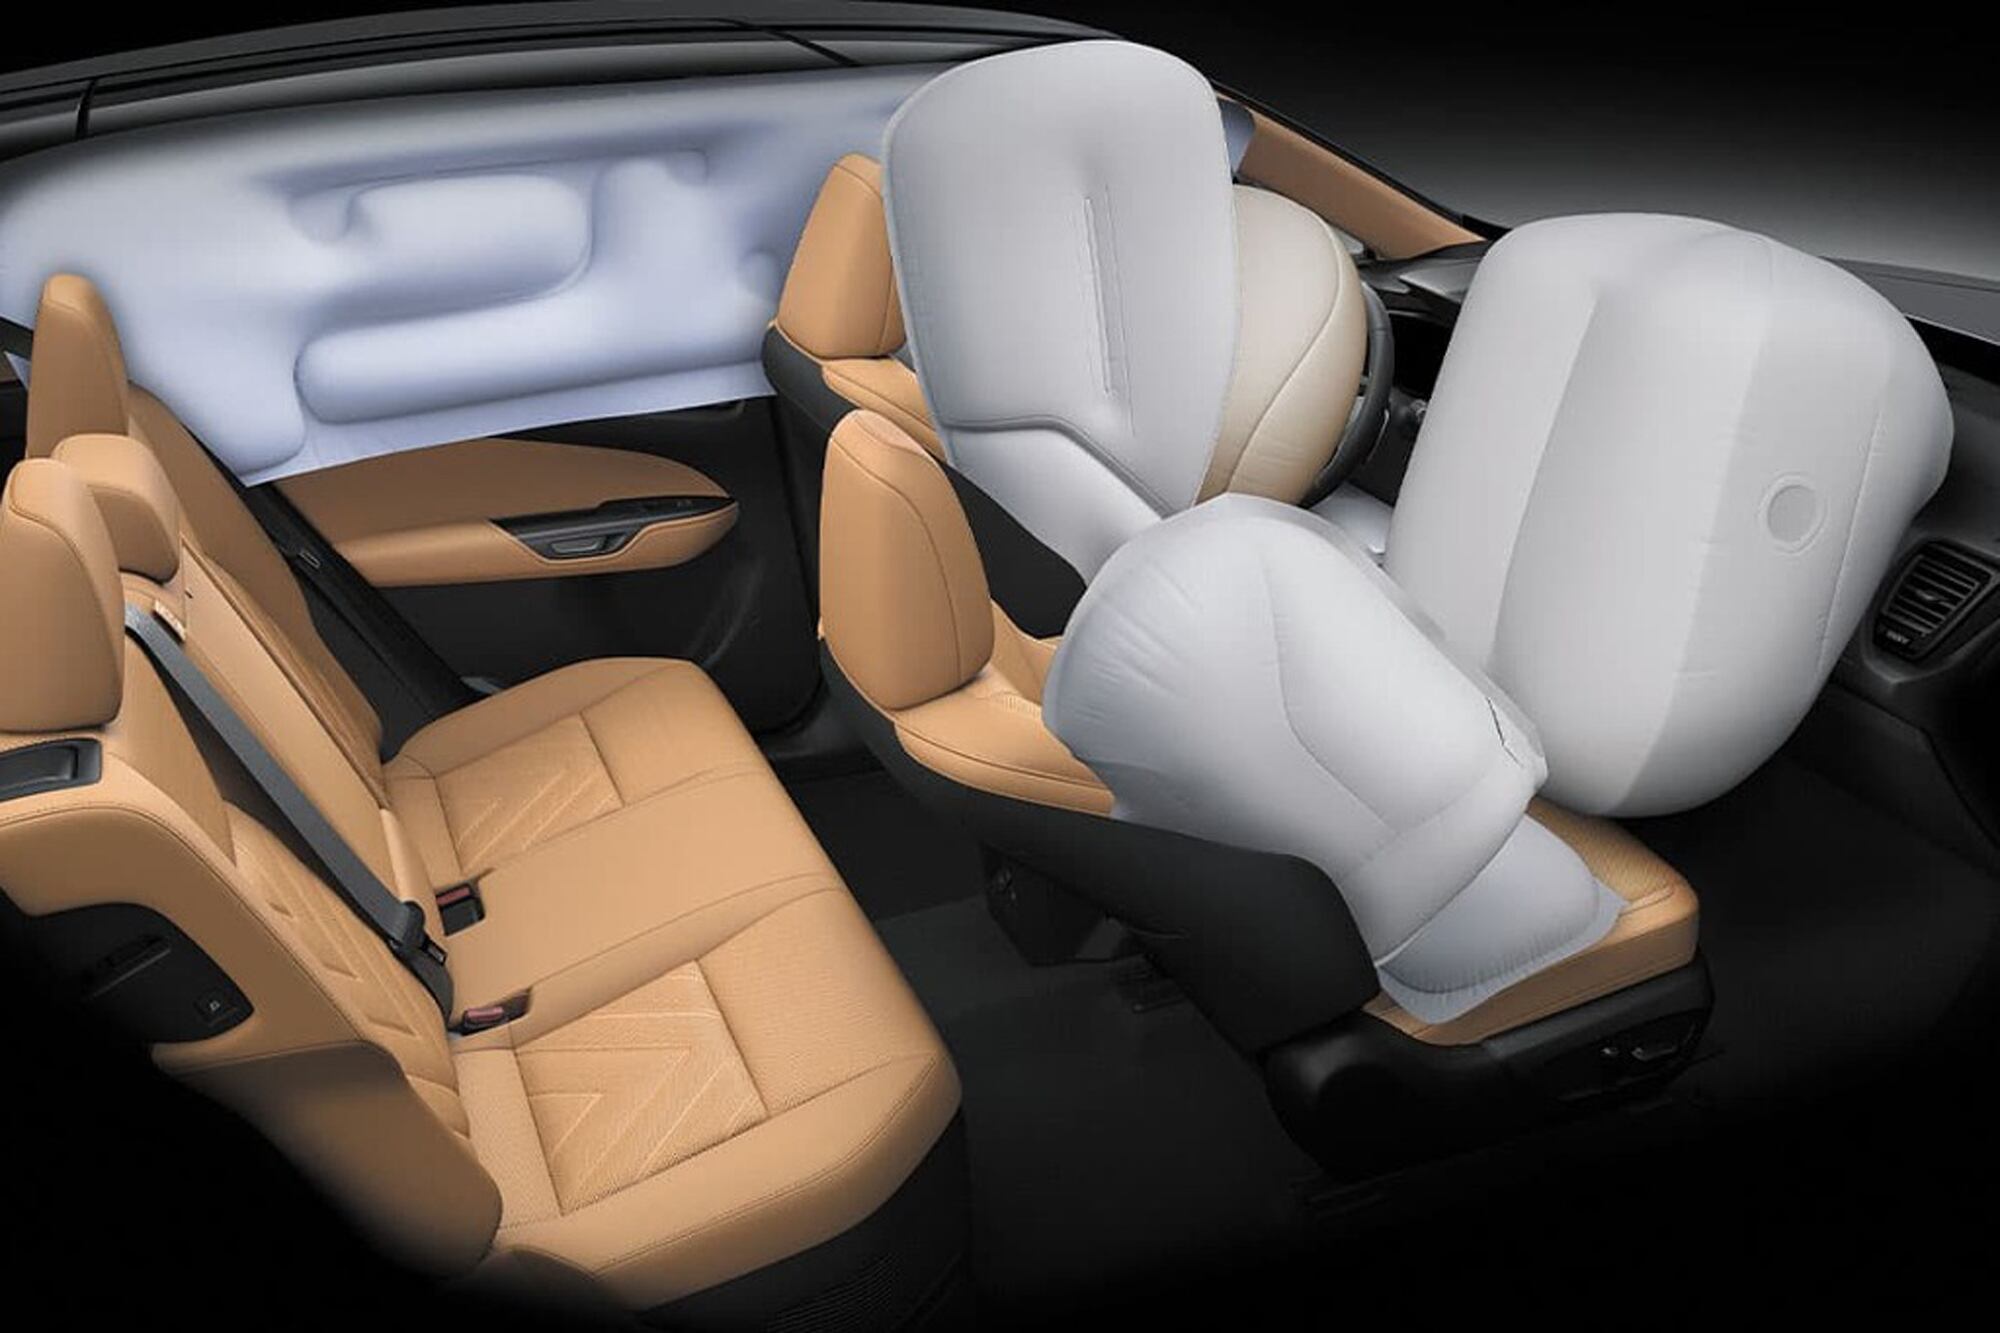 Ofrece ocho airbags, compuesto por dos airbags frontales, dos laterales frontales, dos de cortina delanteros y traseros, uno de rodilla para el conductor y uno delantero central 